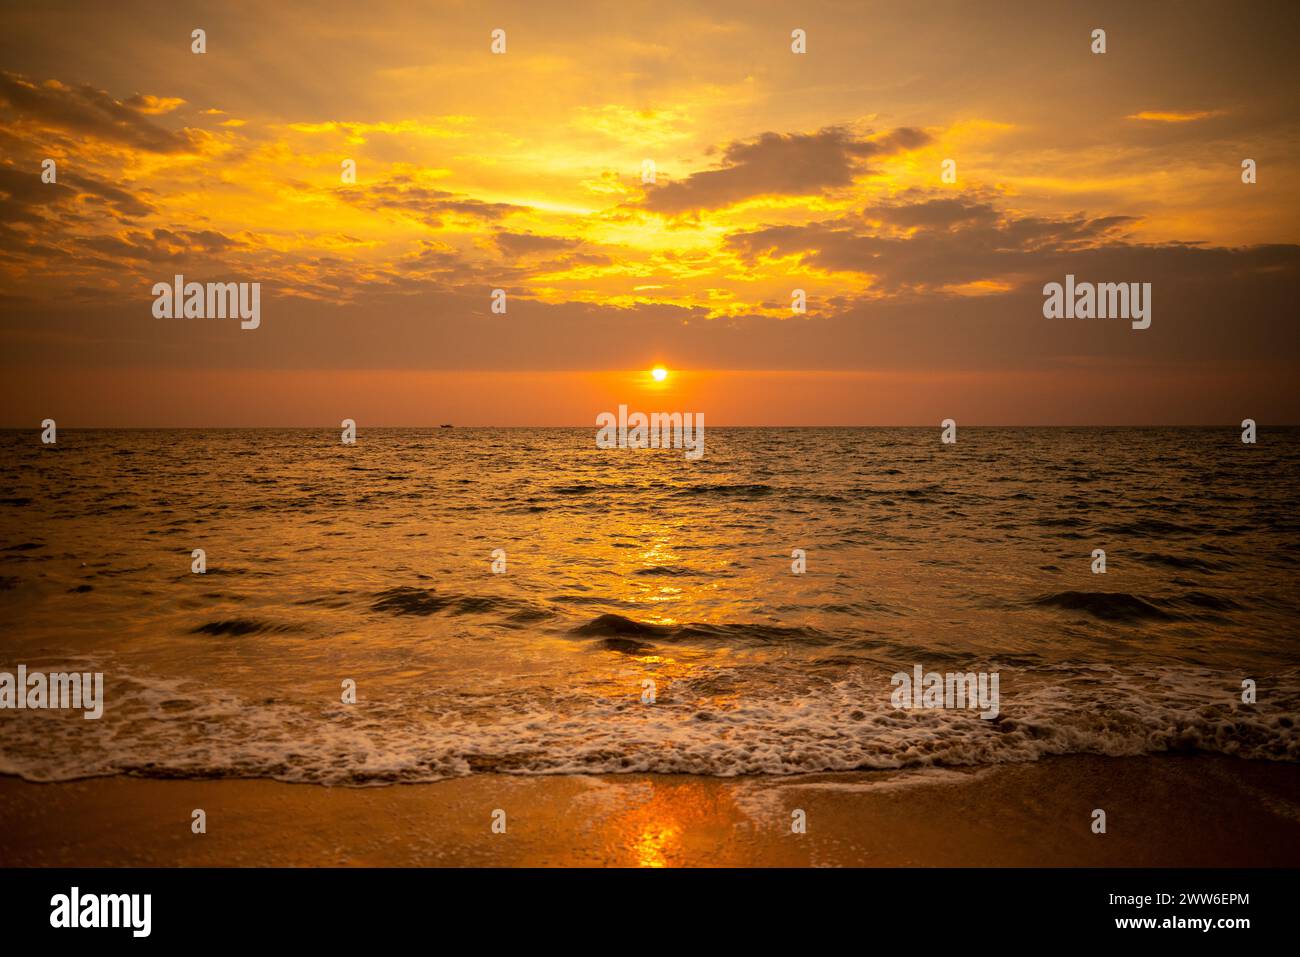 Ein wunderschöner Blick auf den Sonnenuntergang vom Strand aus, Sonnenuntergang ist der Hinweis auf einen Sonnenaufgang, Farbe des Himmels während der Sonnenuntergangszeit, wunderschöner Strand, Sonnenuntergang Stockfoto